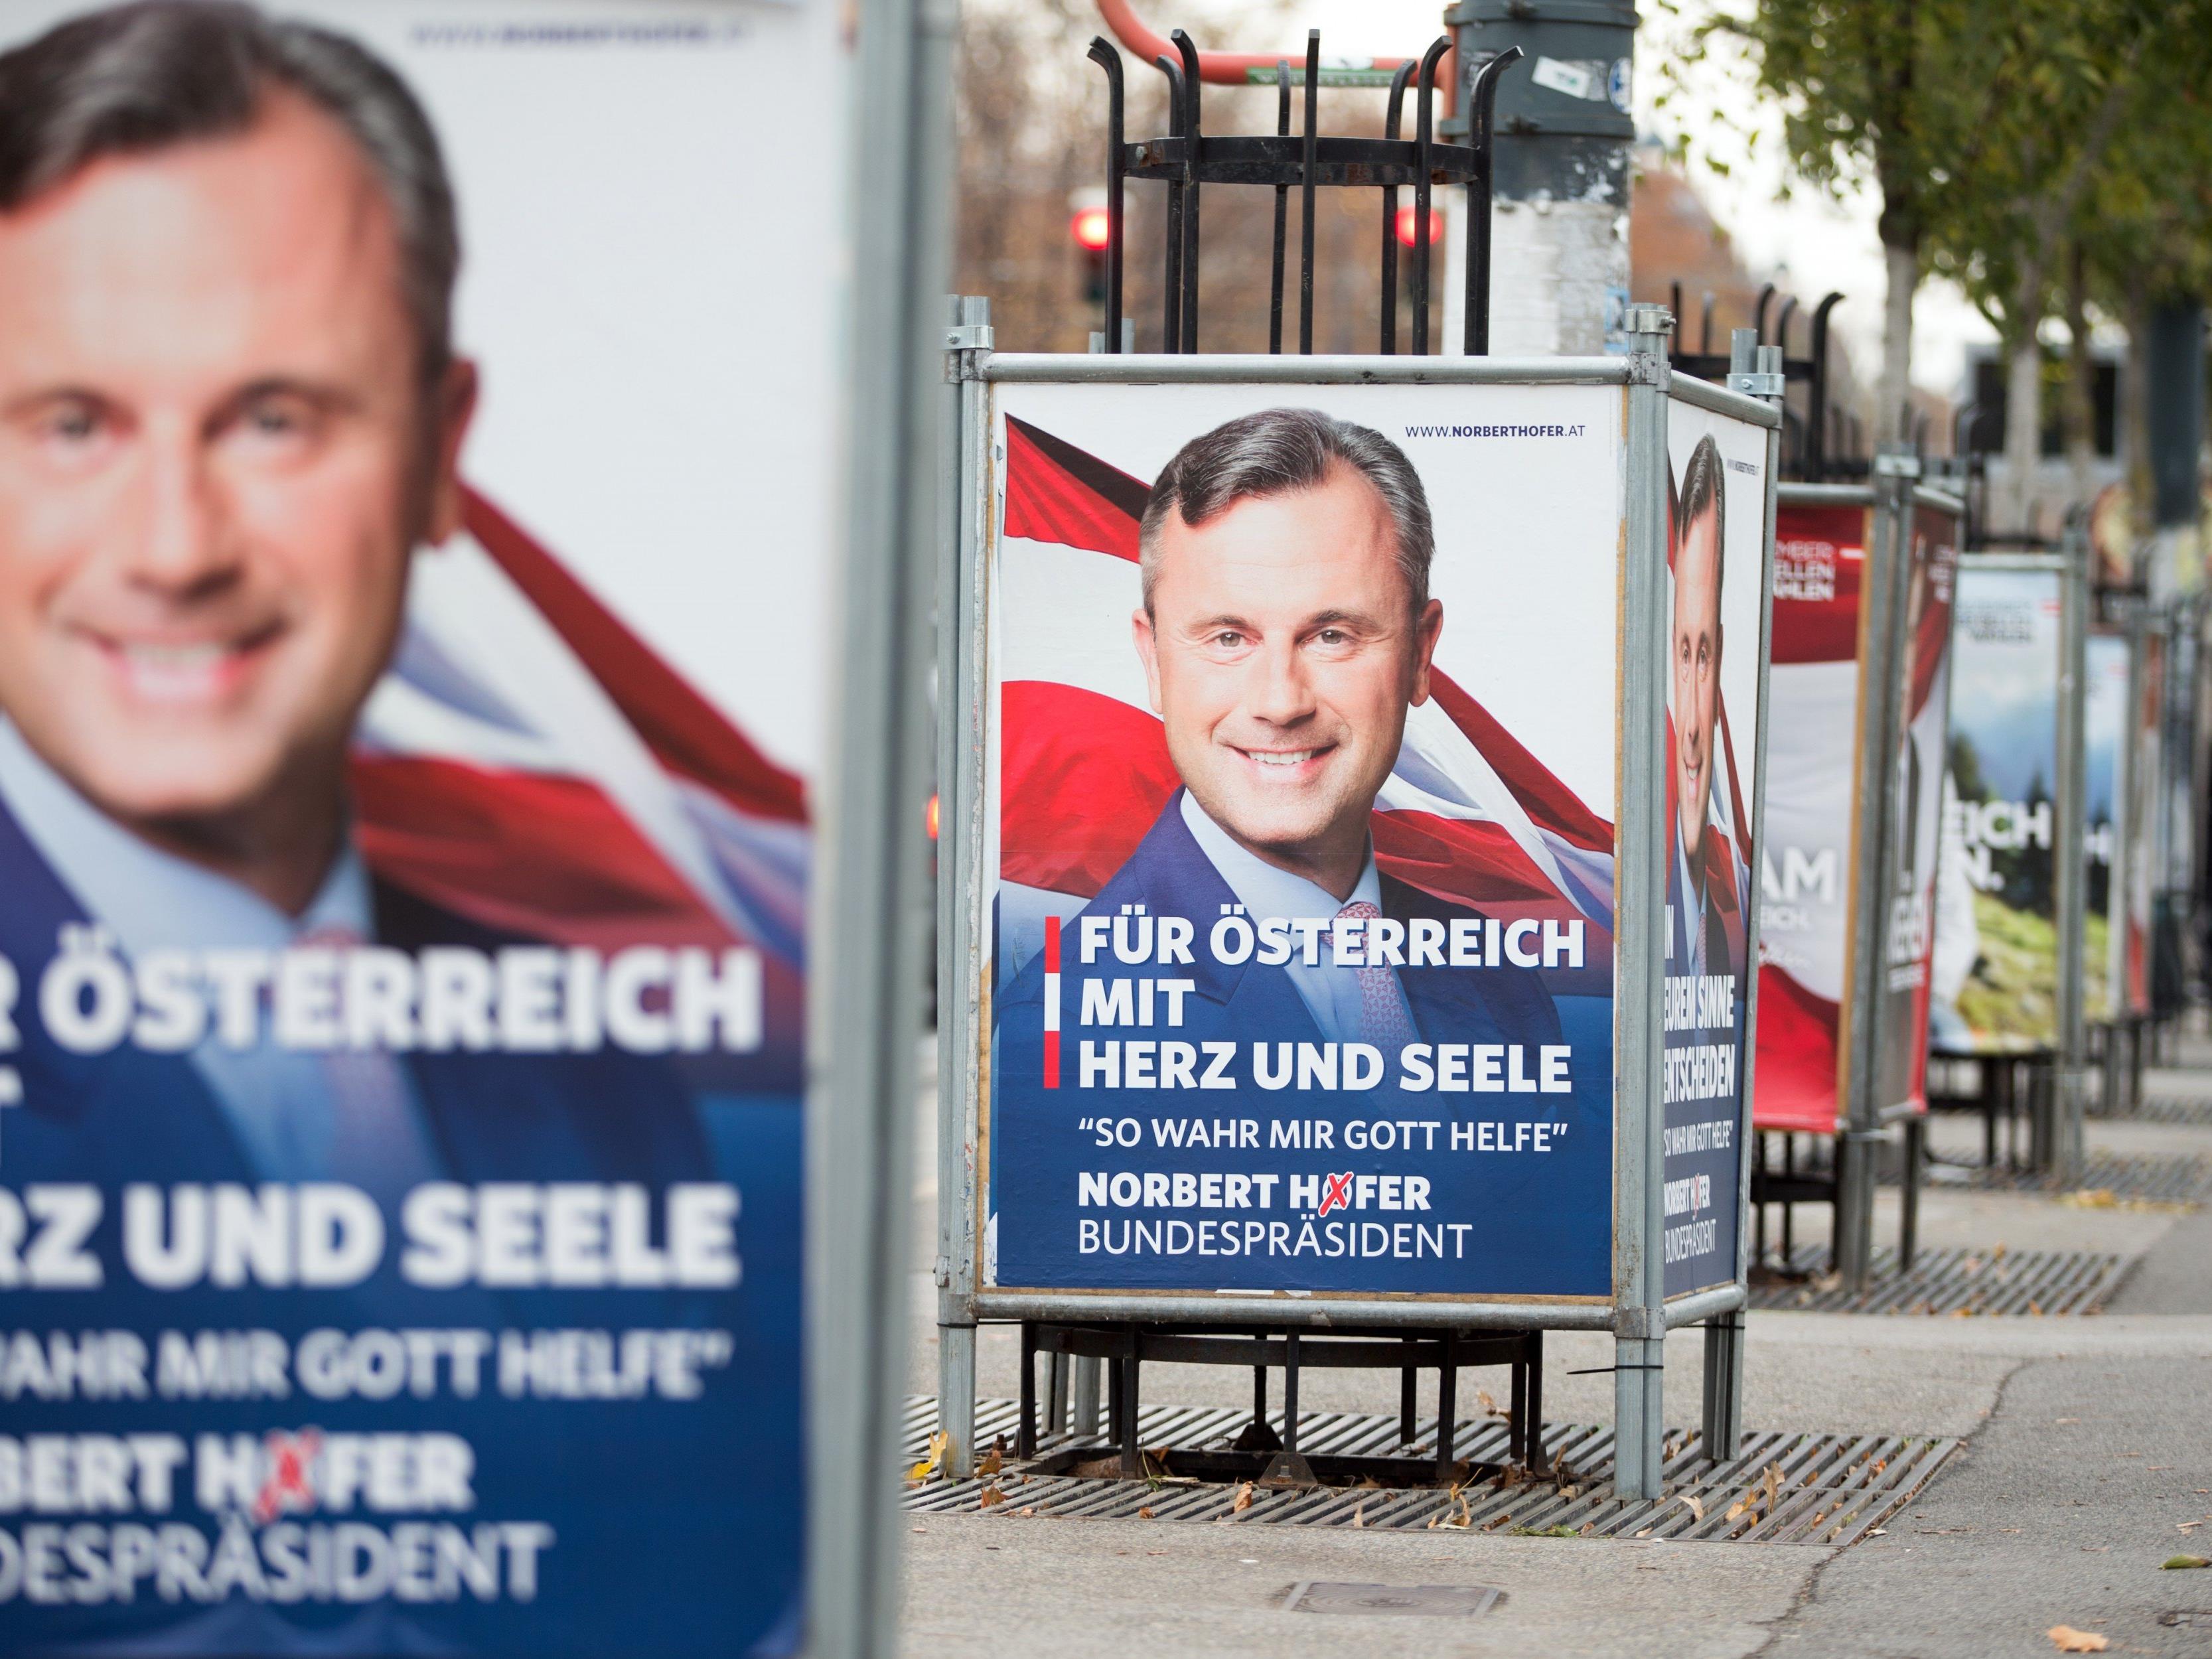 Unbekannte stahlen in der Nacht zu Donnerstag in Bregenz acht Wahlplakate von Bundespräsidentschaftskandidat Norbert Hofer.